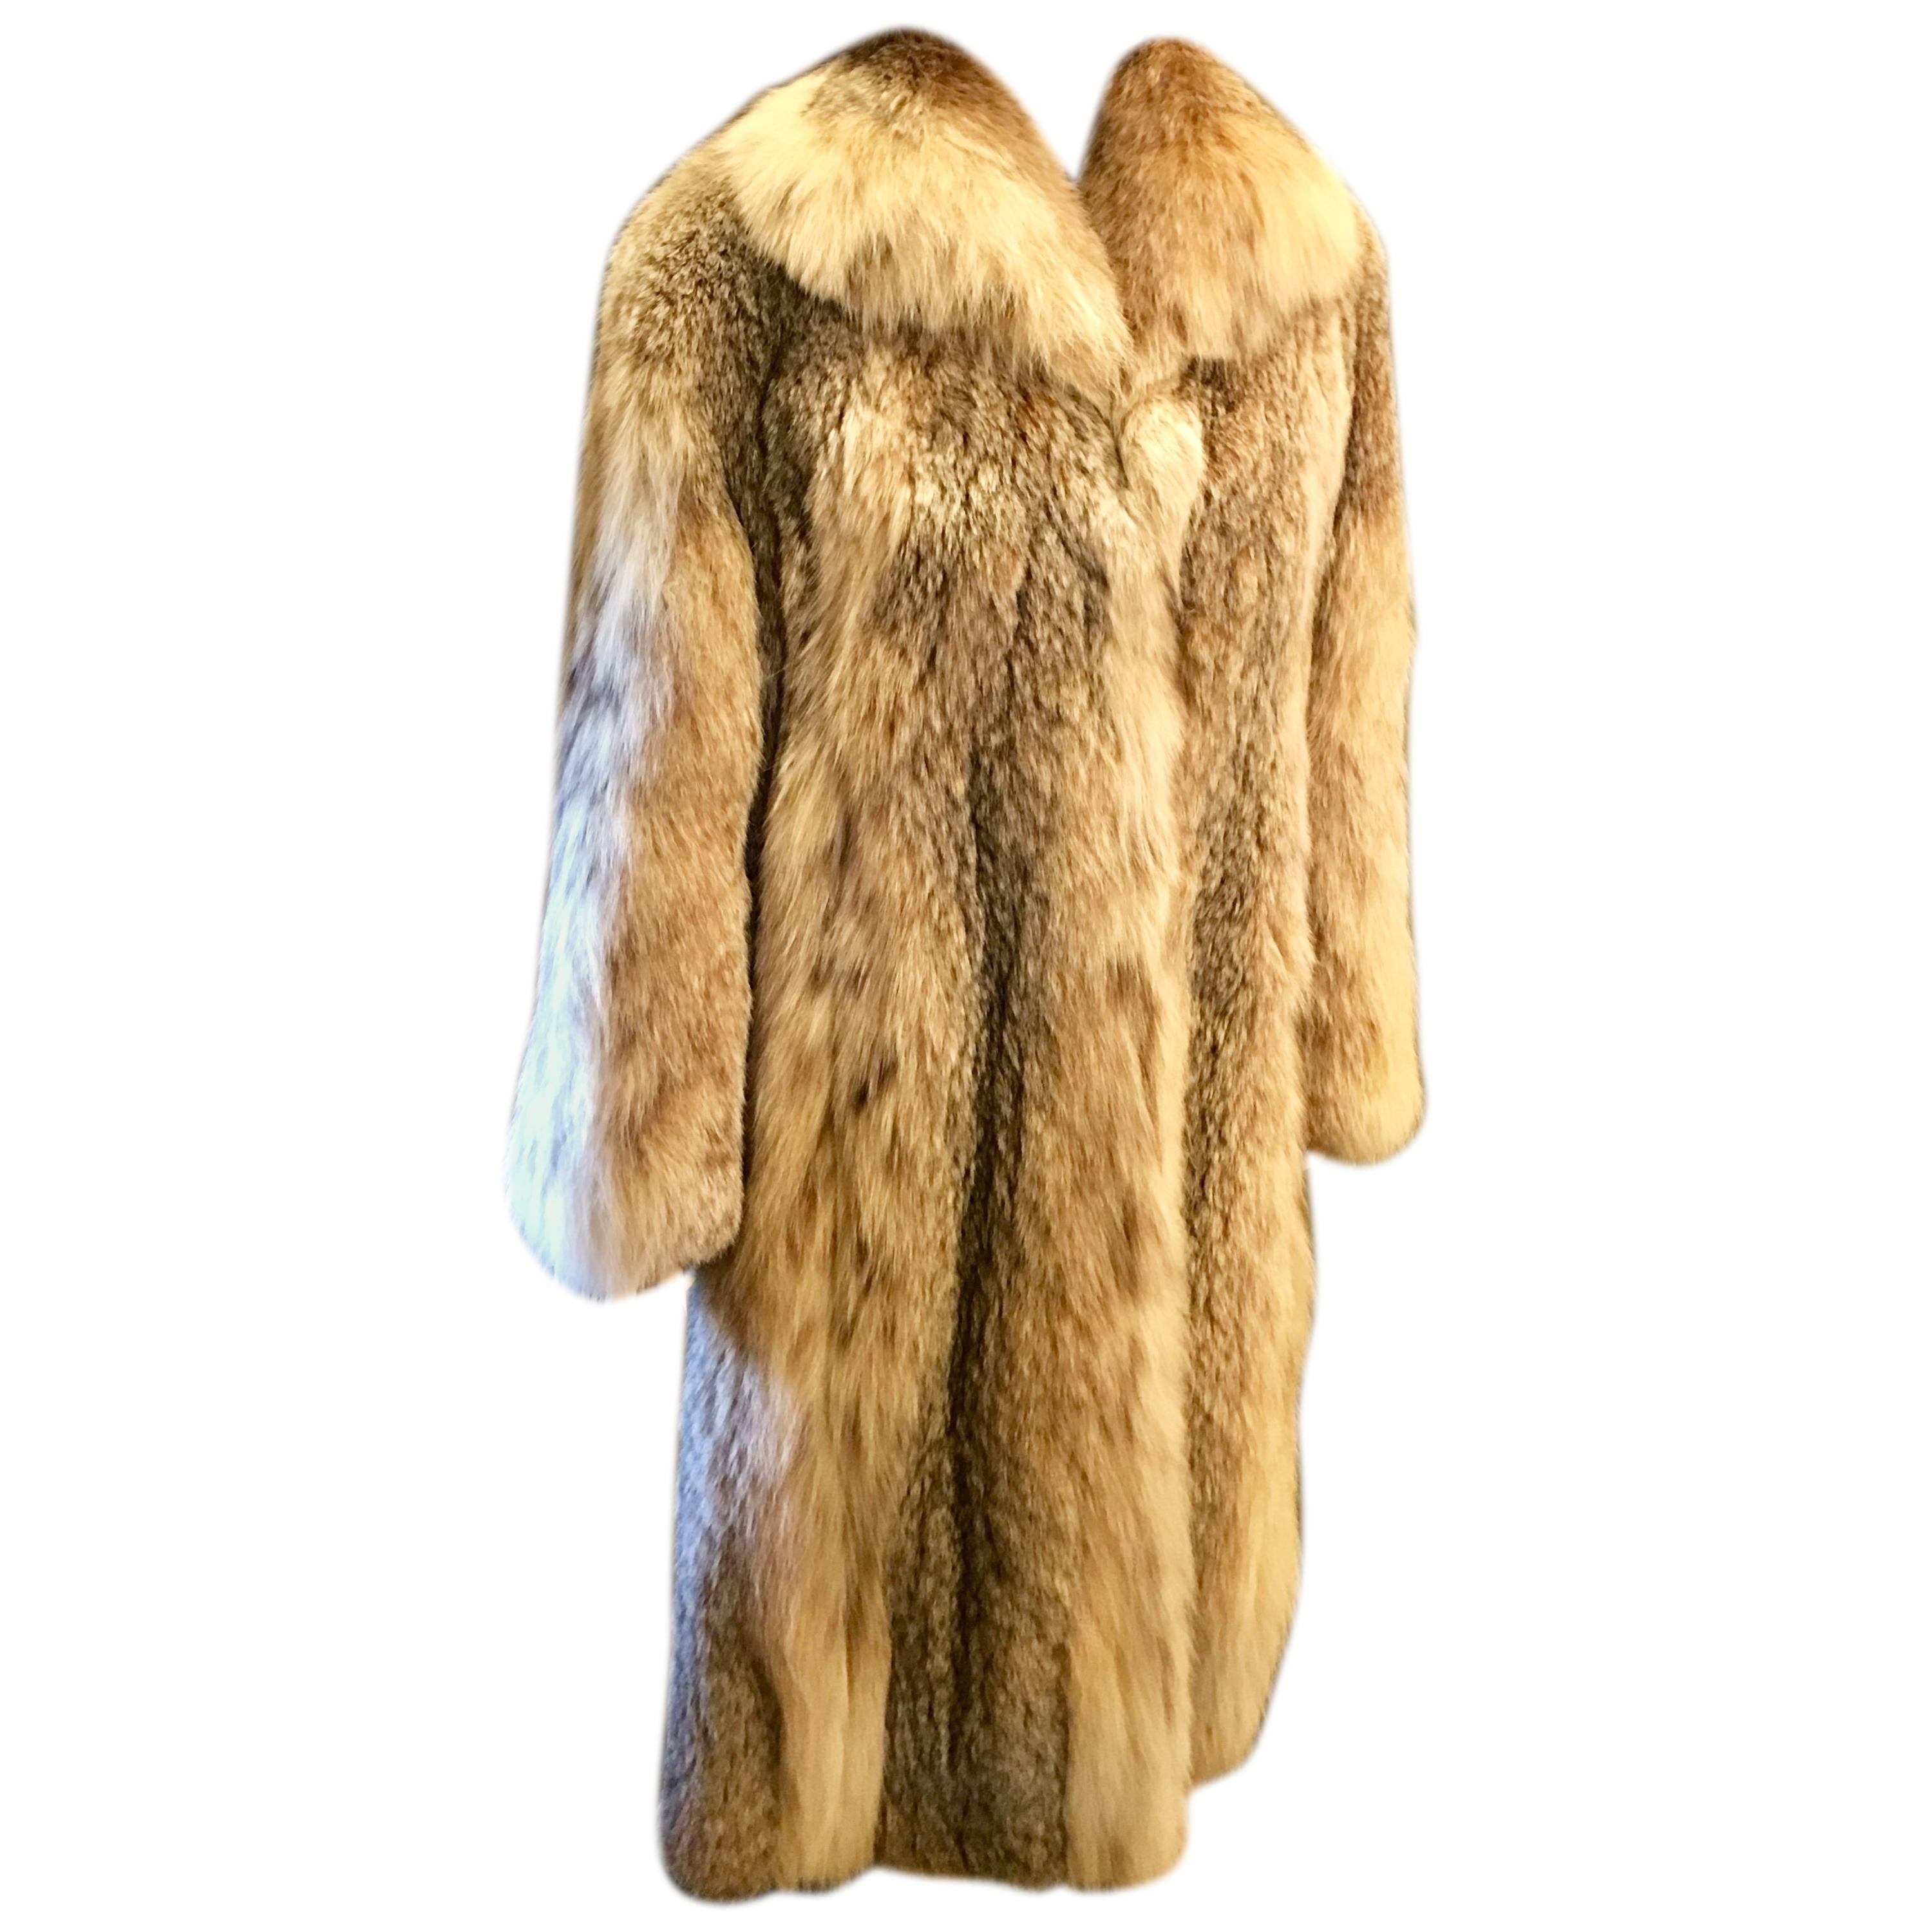 Sumptuous Siberian Lynx Fur Coat by Revillion Paris New York Full Length